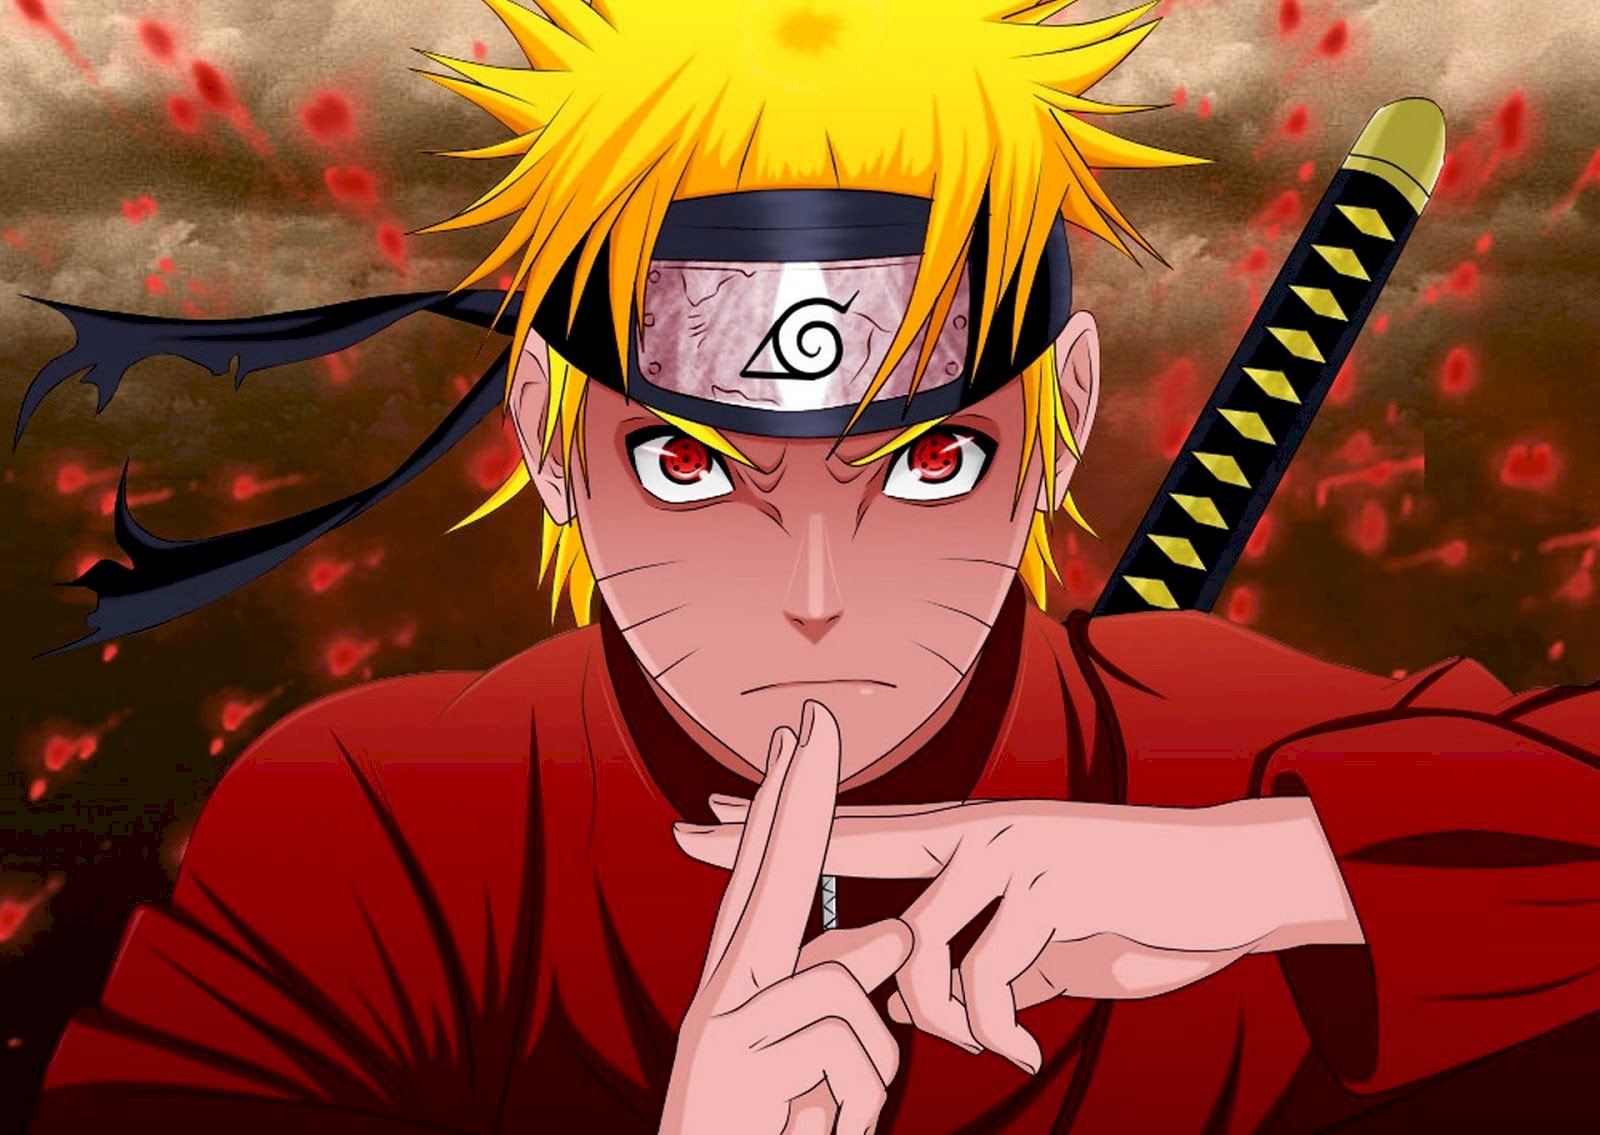 Hình nền Nhẫn Thuật Uzumaki Naruto mang đến cho bạn một món quà đặc biệt từ thế giới Naruto. Bạn sẽ được trải nghiệm những kỹ năng phép thuật đặc sắc của Uzumaki Naruto, một trong những ninja mạnh nhất trong bộ anime. Hình ảnh chân thật và sắc nét, bạn sẽ không thể rời mắt khỏi chúng!